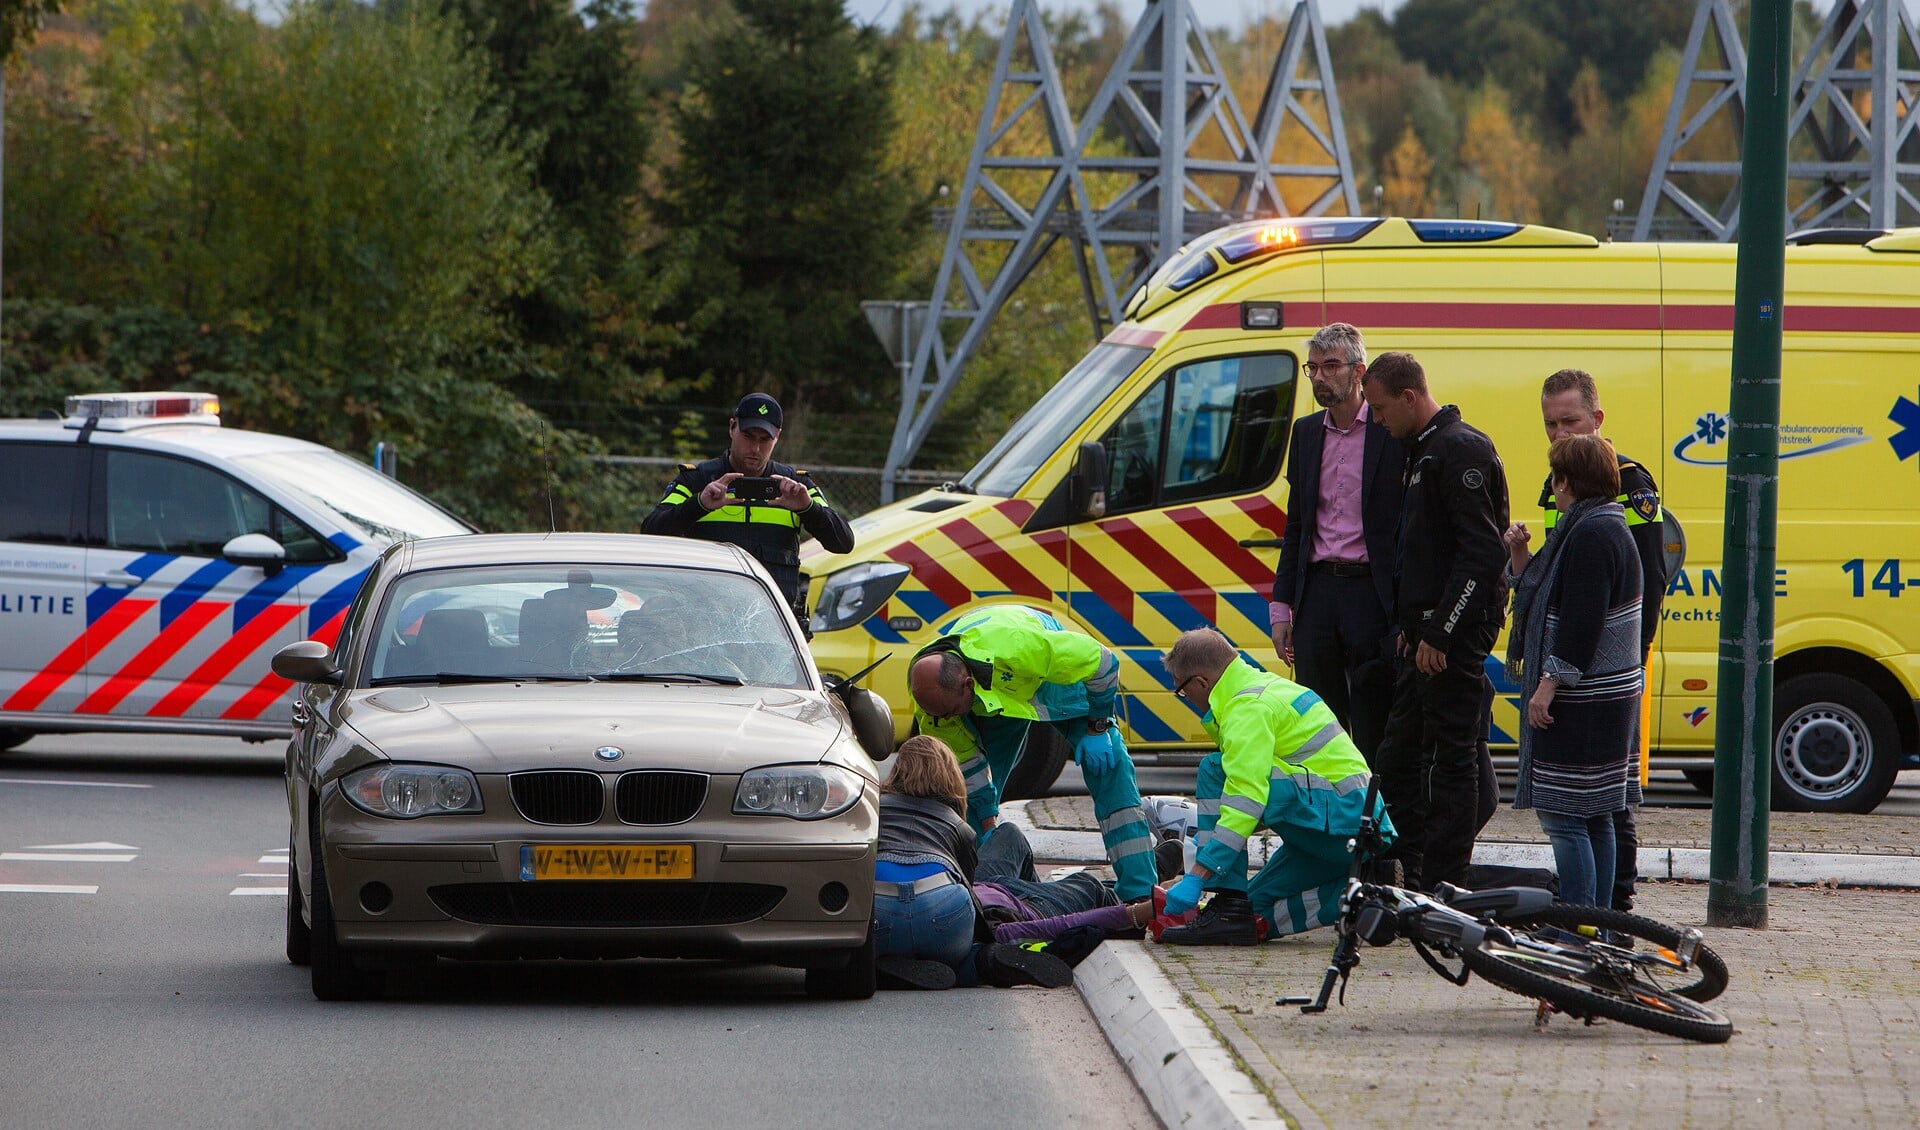 Ambulancepersoneel helpt de fietser die door de automobilist niet op tijd werd gezien.